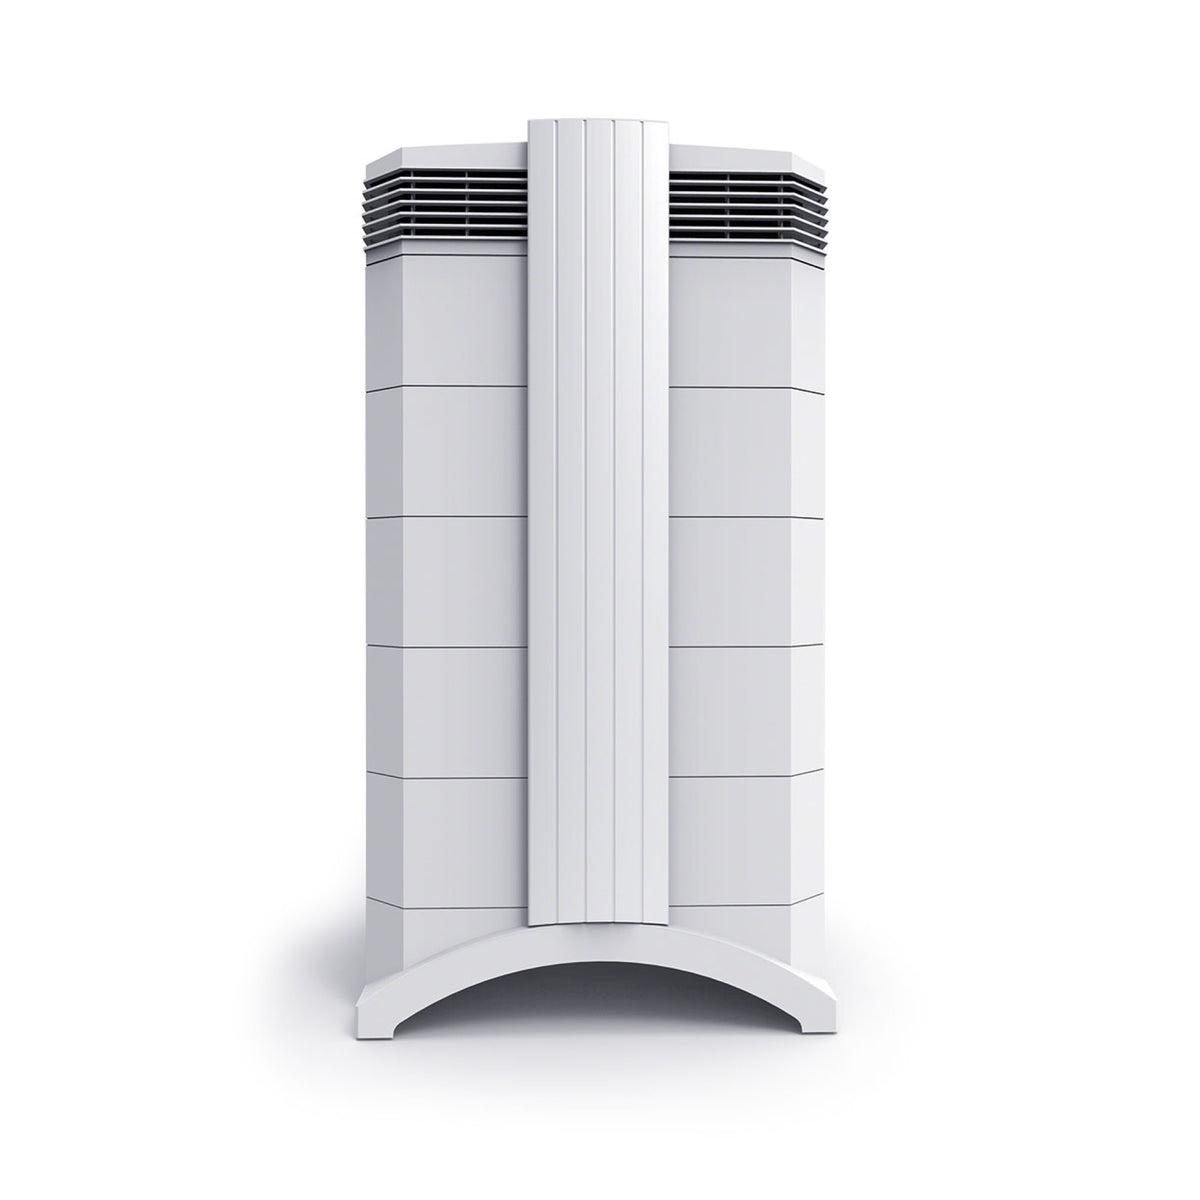 IQAir HealthPro Series air purifier